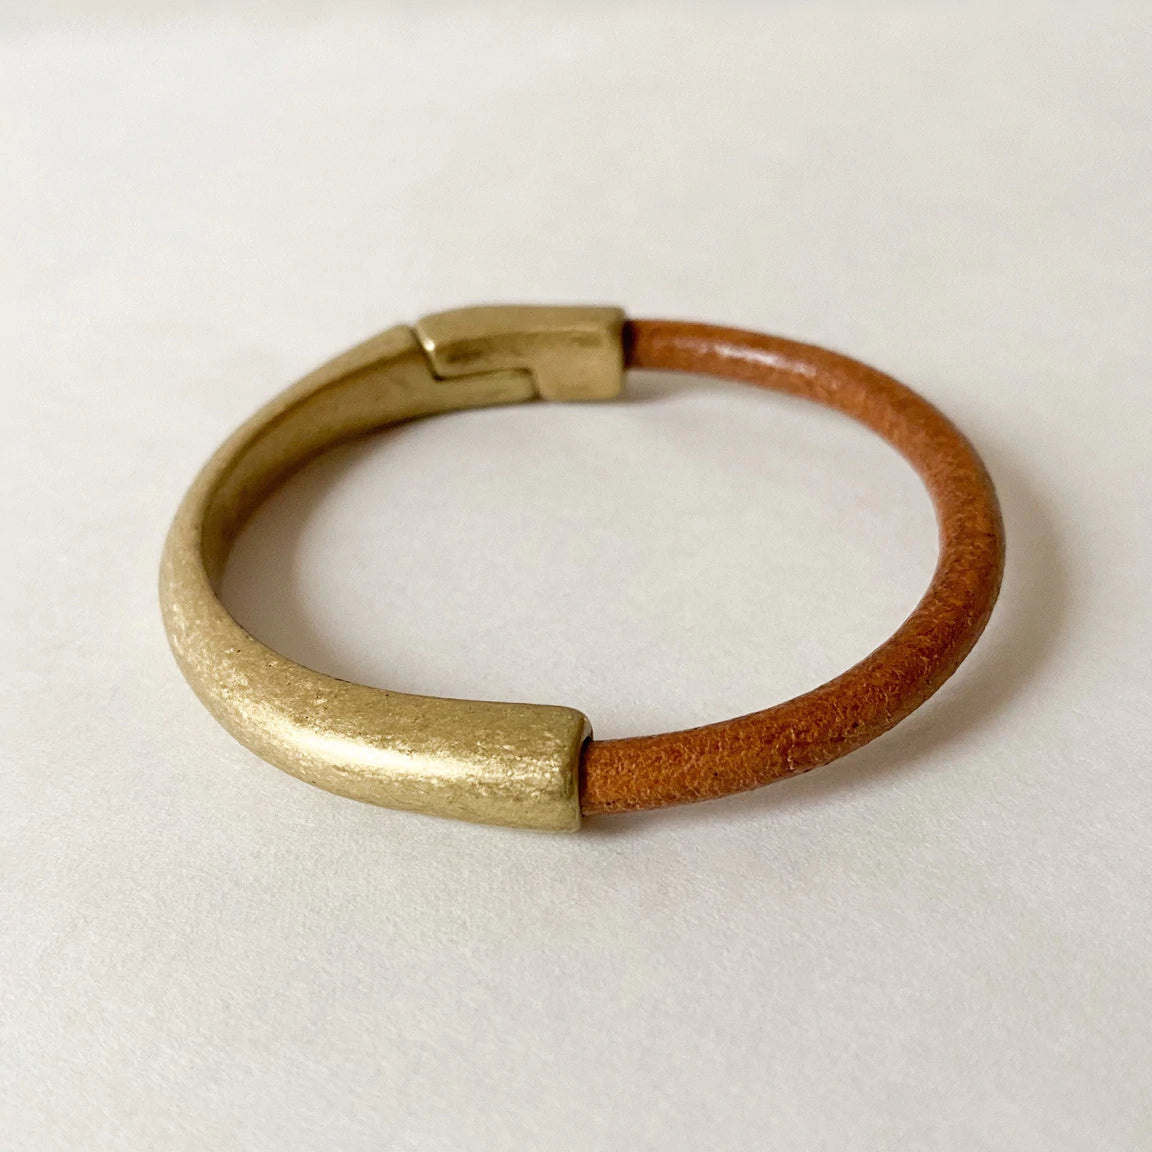 Medium Width Leather Bracelet